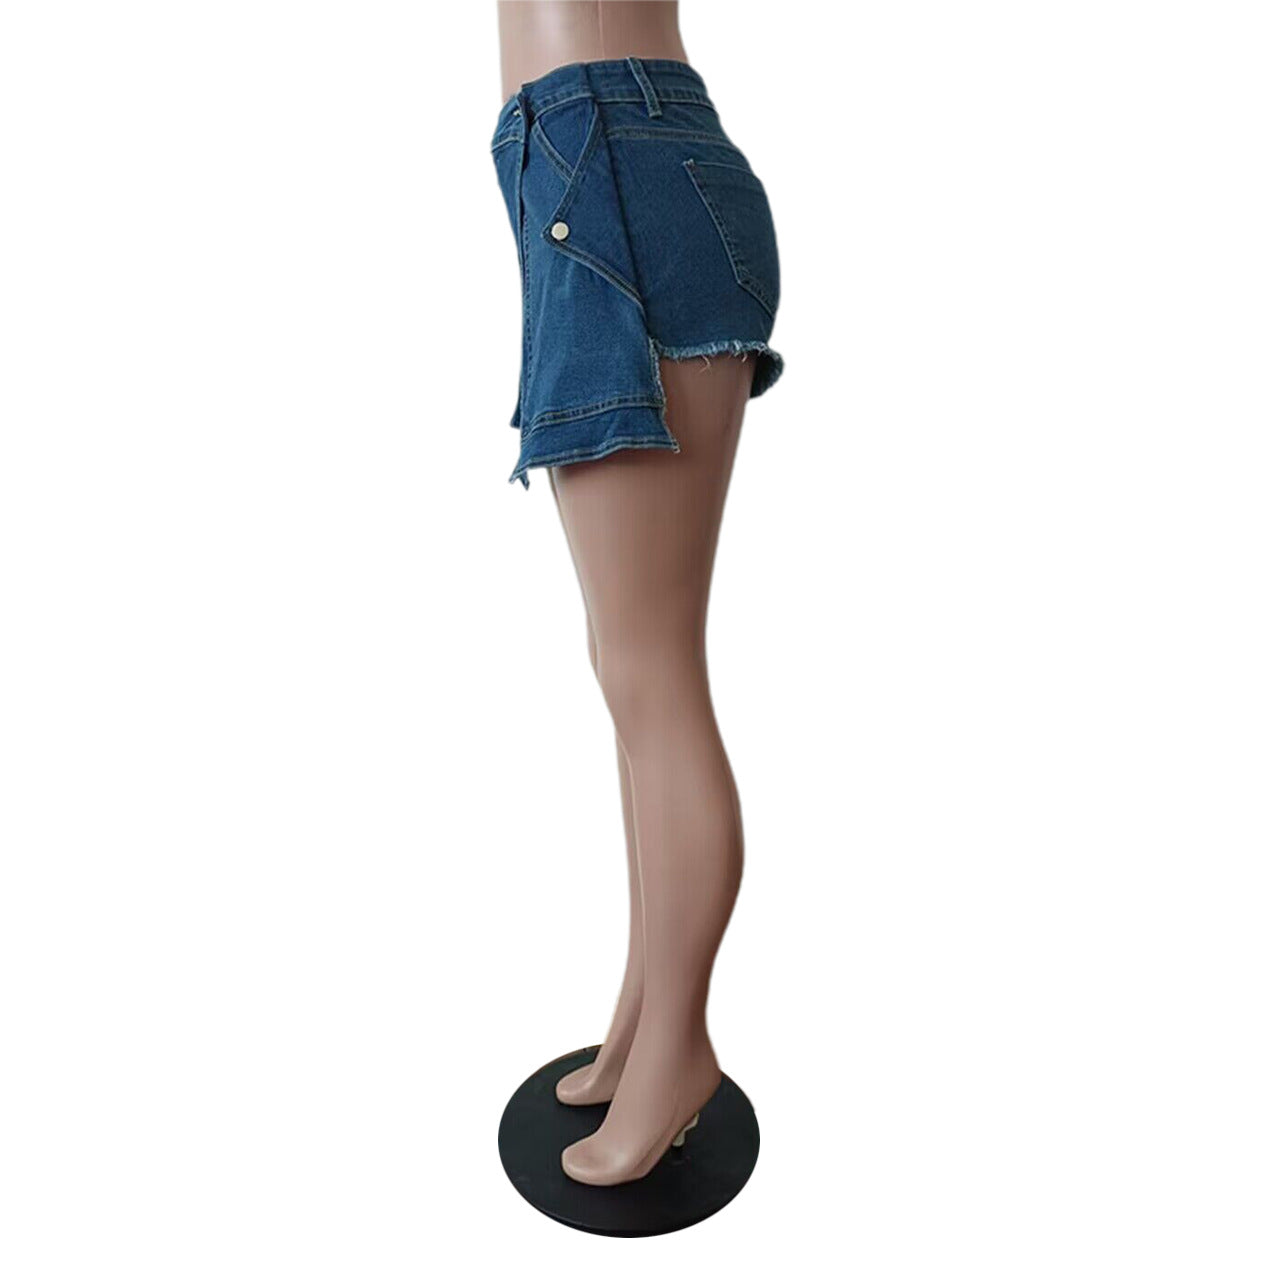 BamBam Denim shorts women's apron elastic shorts - BamBam